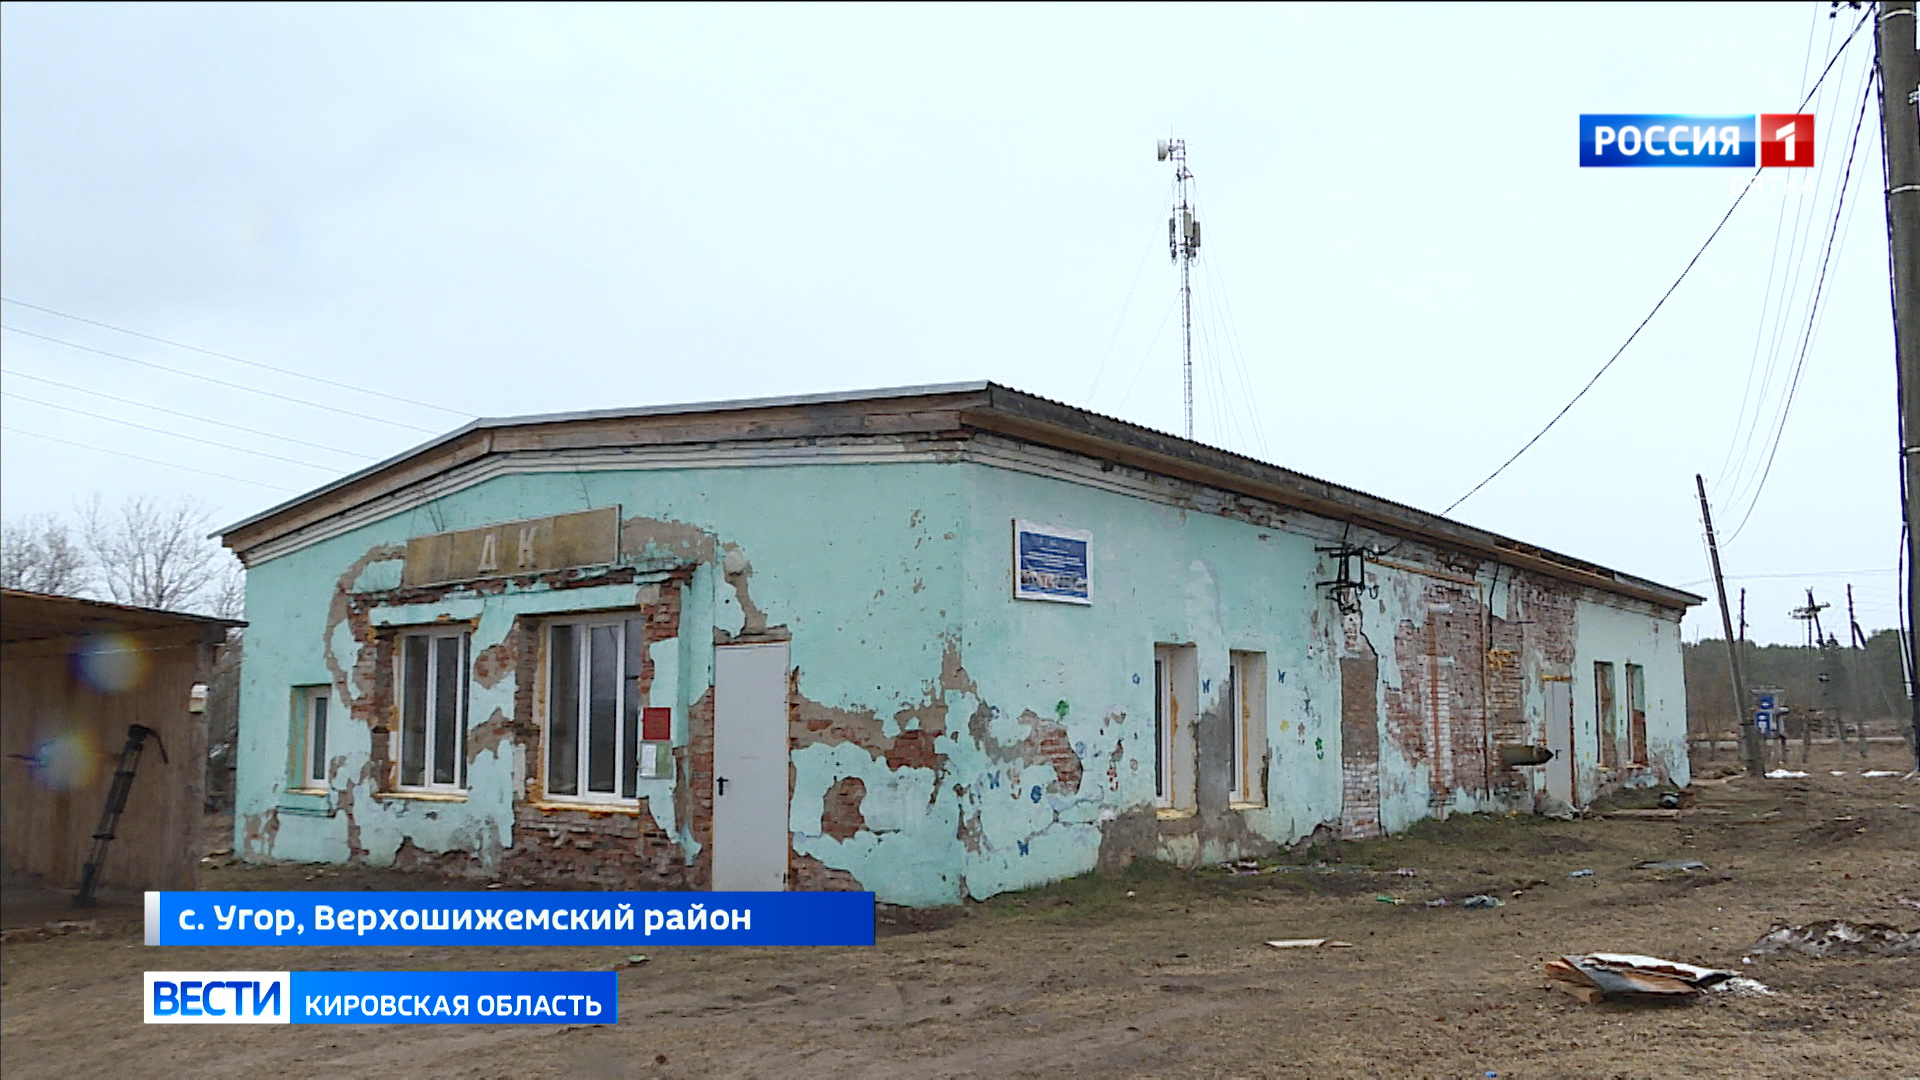 Капремонт Дома культуры в Верхошижемском районе планируют завершить к осени